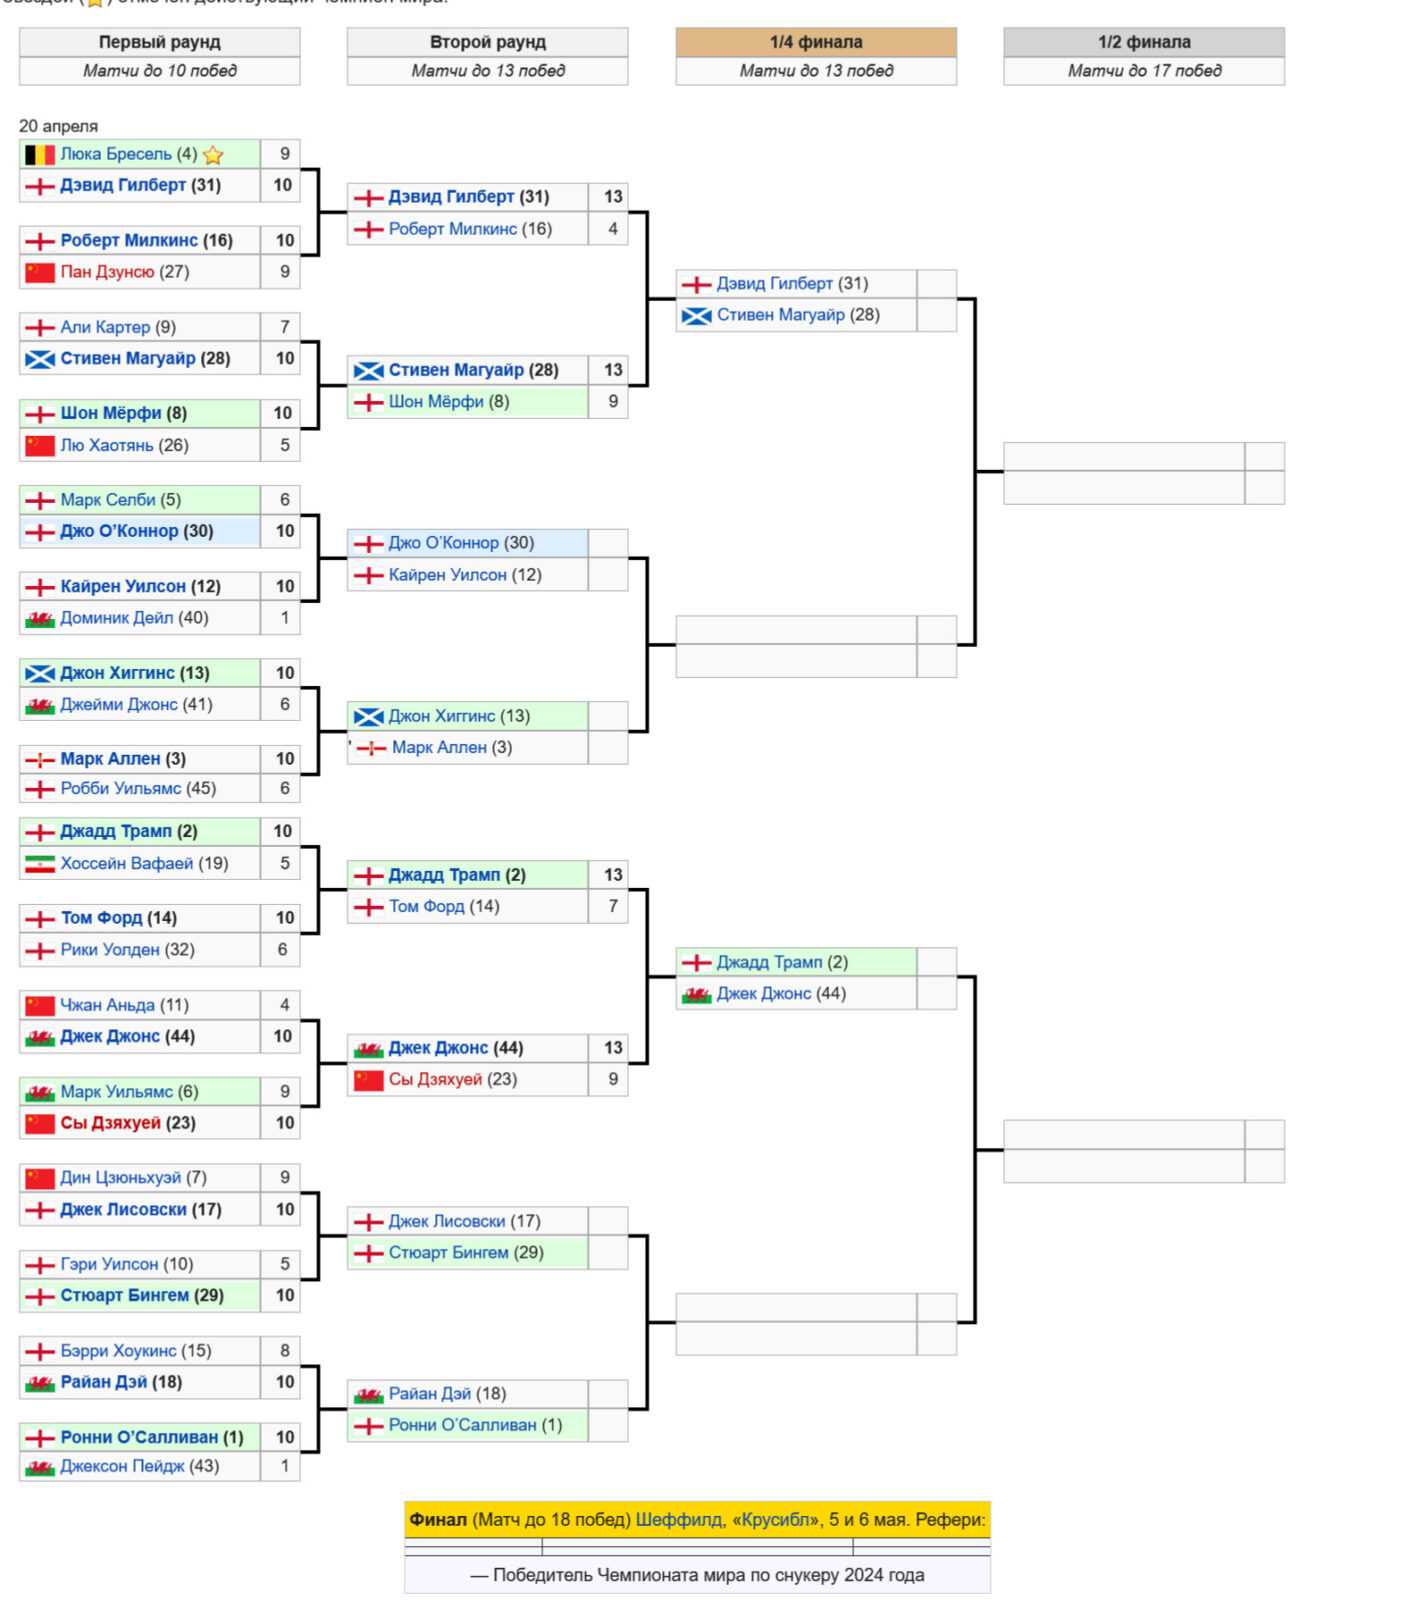 Чемпионат мира 2024 по снукеру: турнирная сетка (таблица)